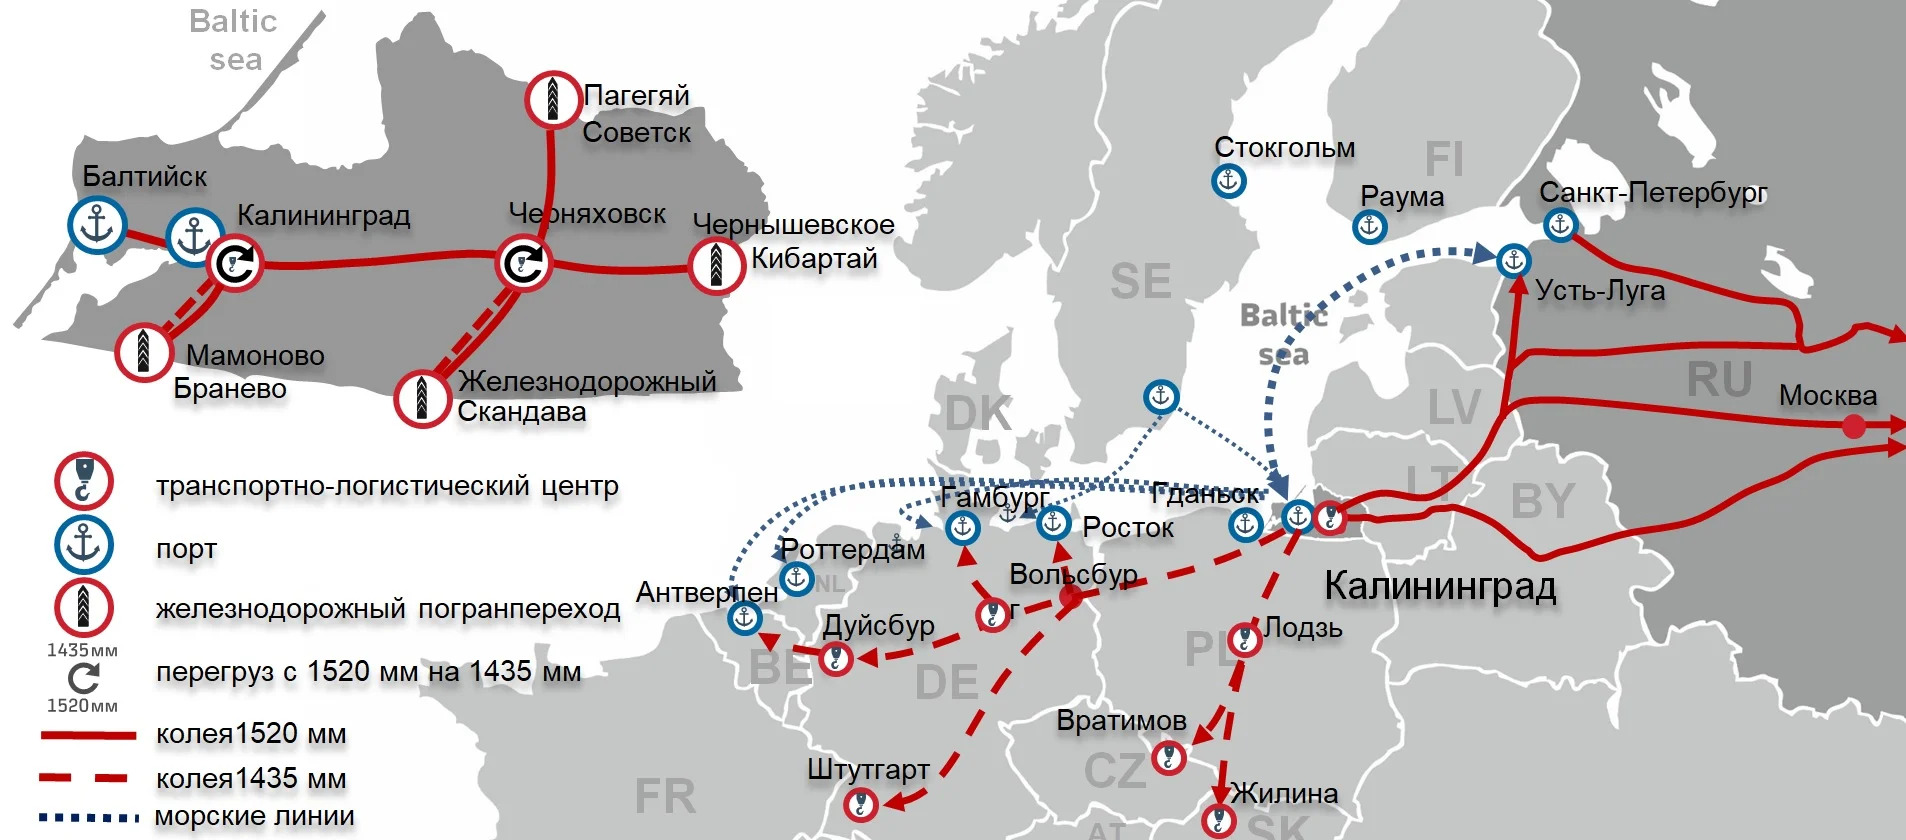 Схема железной дороги Калининградской области